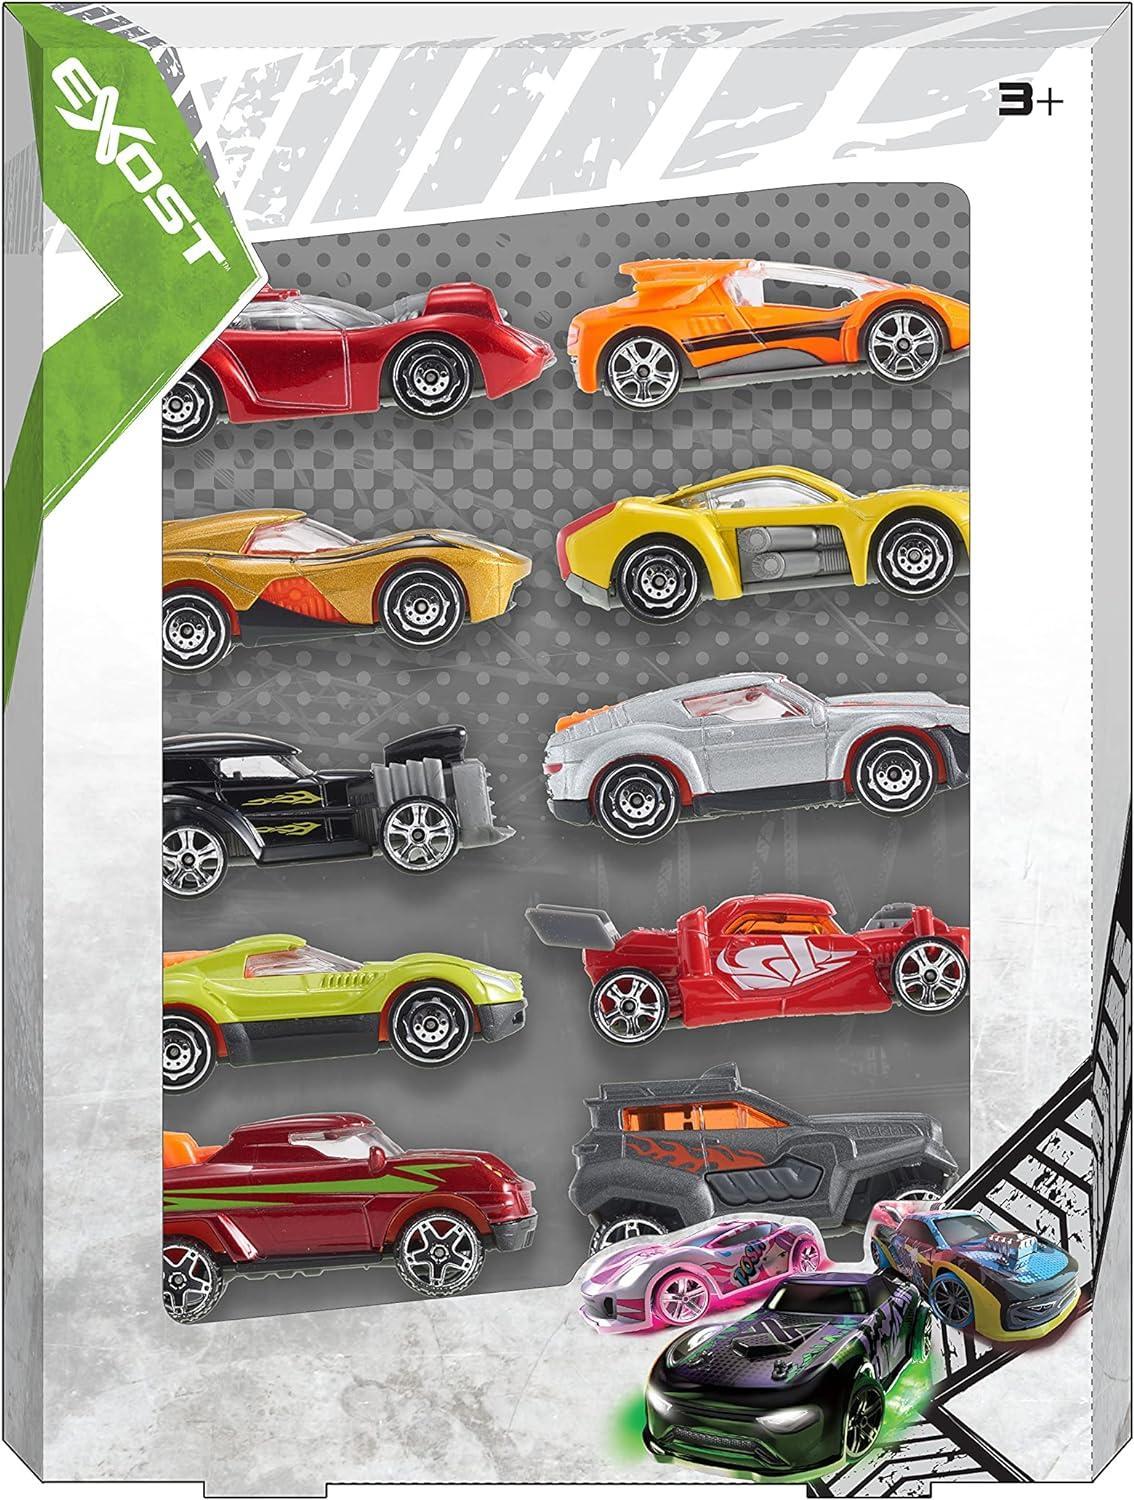 rocco giocattoli exost 10 veicoli metallo